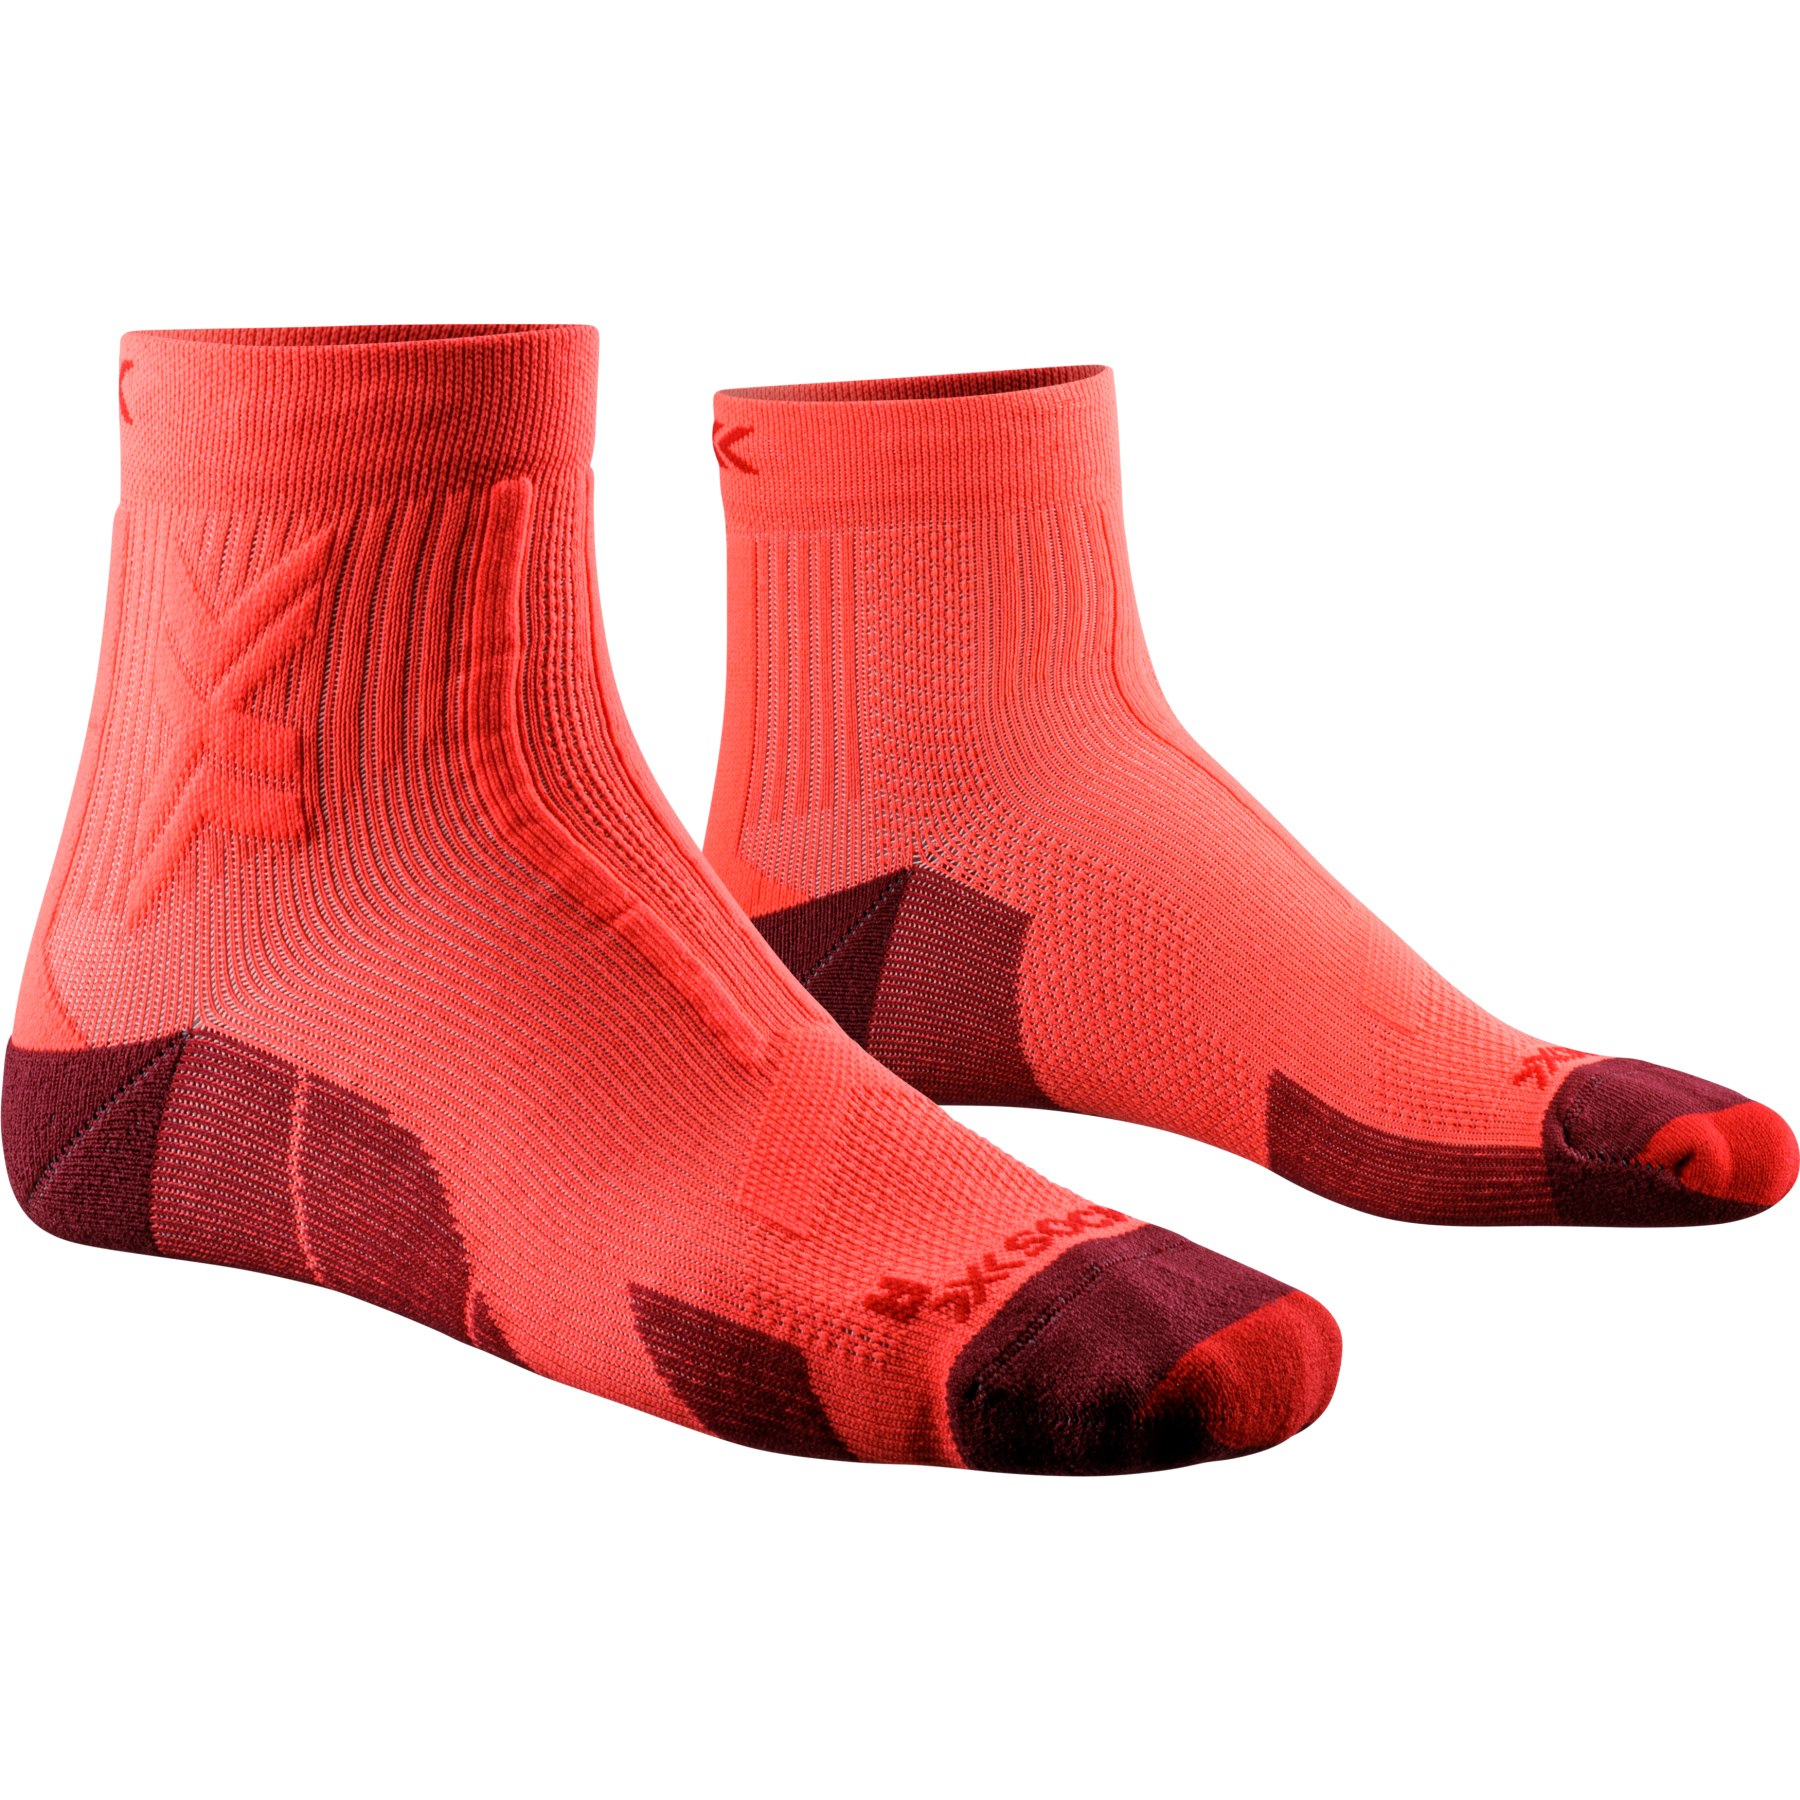 Produktbild von X-Socks Trail Run Discover Ankle Socken Herren - fluo red/namib red